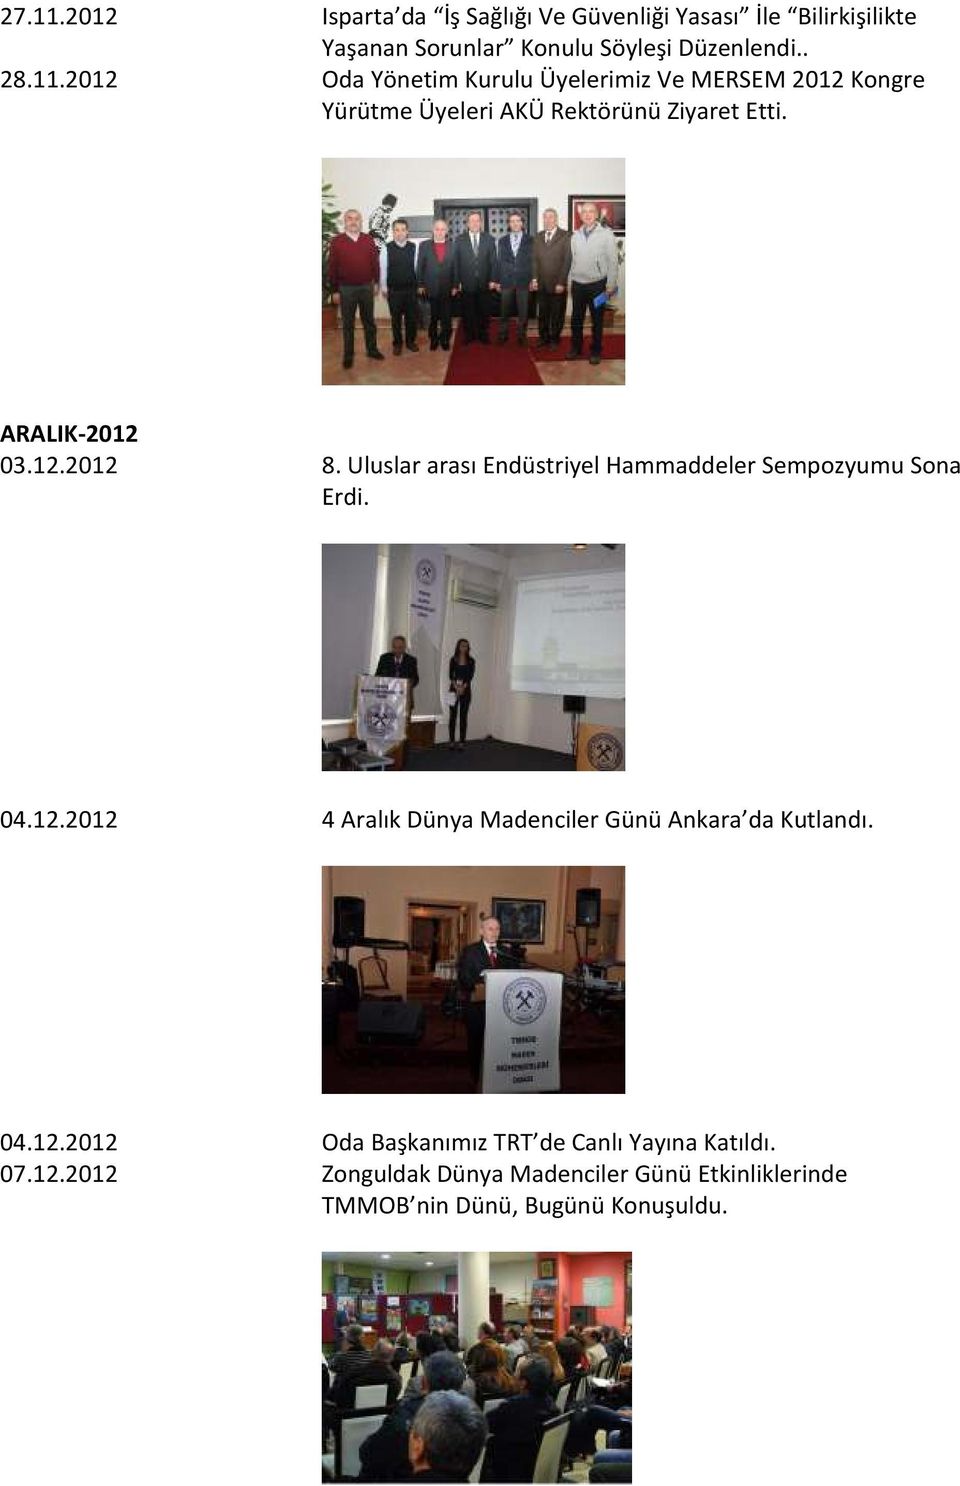 04.12.2012 Oda Başkanımız TRT de Canlı Yayına Katıldı. 07.12.2012 Zonguldak Dünya Madenciler Günü Etkinliklerinde TMMOB nin Dünü, Bugünü Konuşuldu.